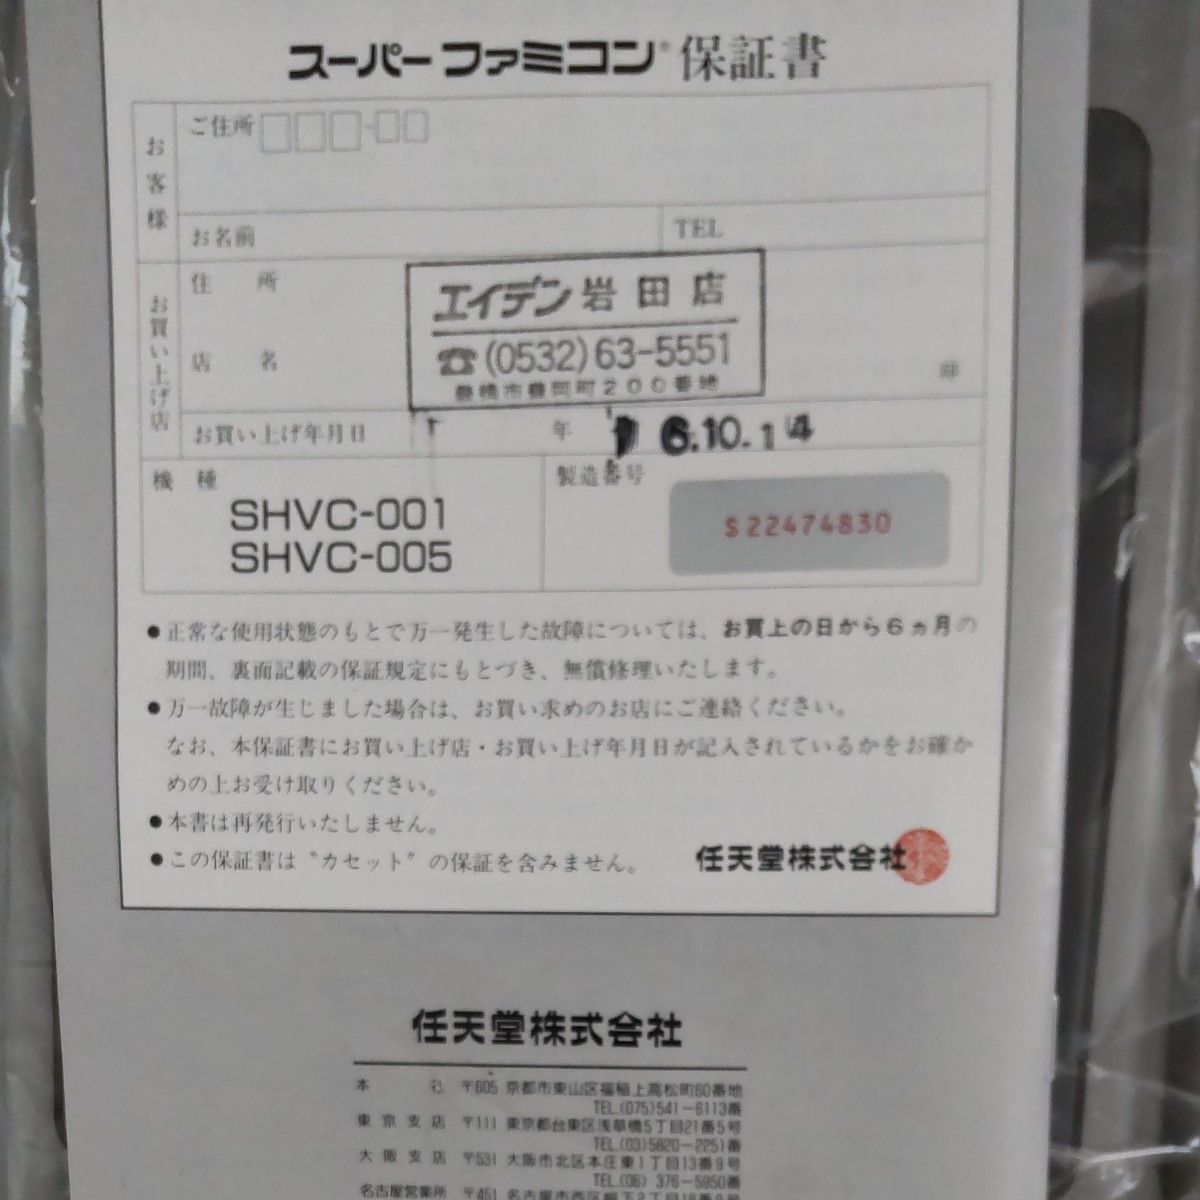 スーパーファミコン SHVC-001 本体 箱説付き